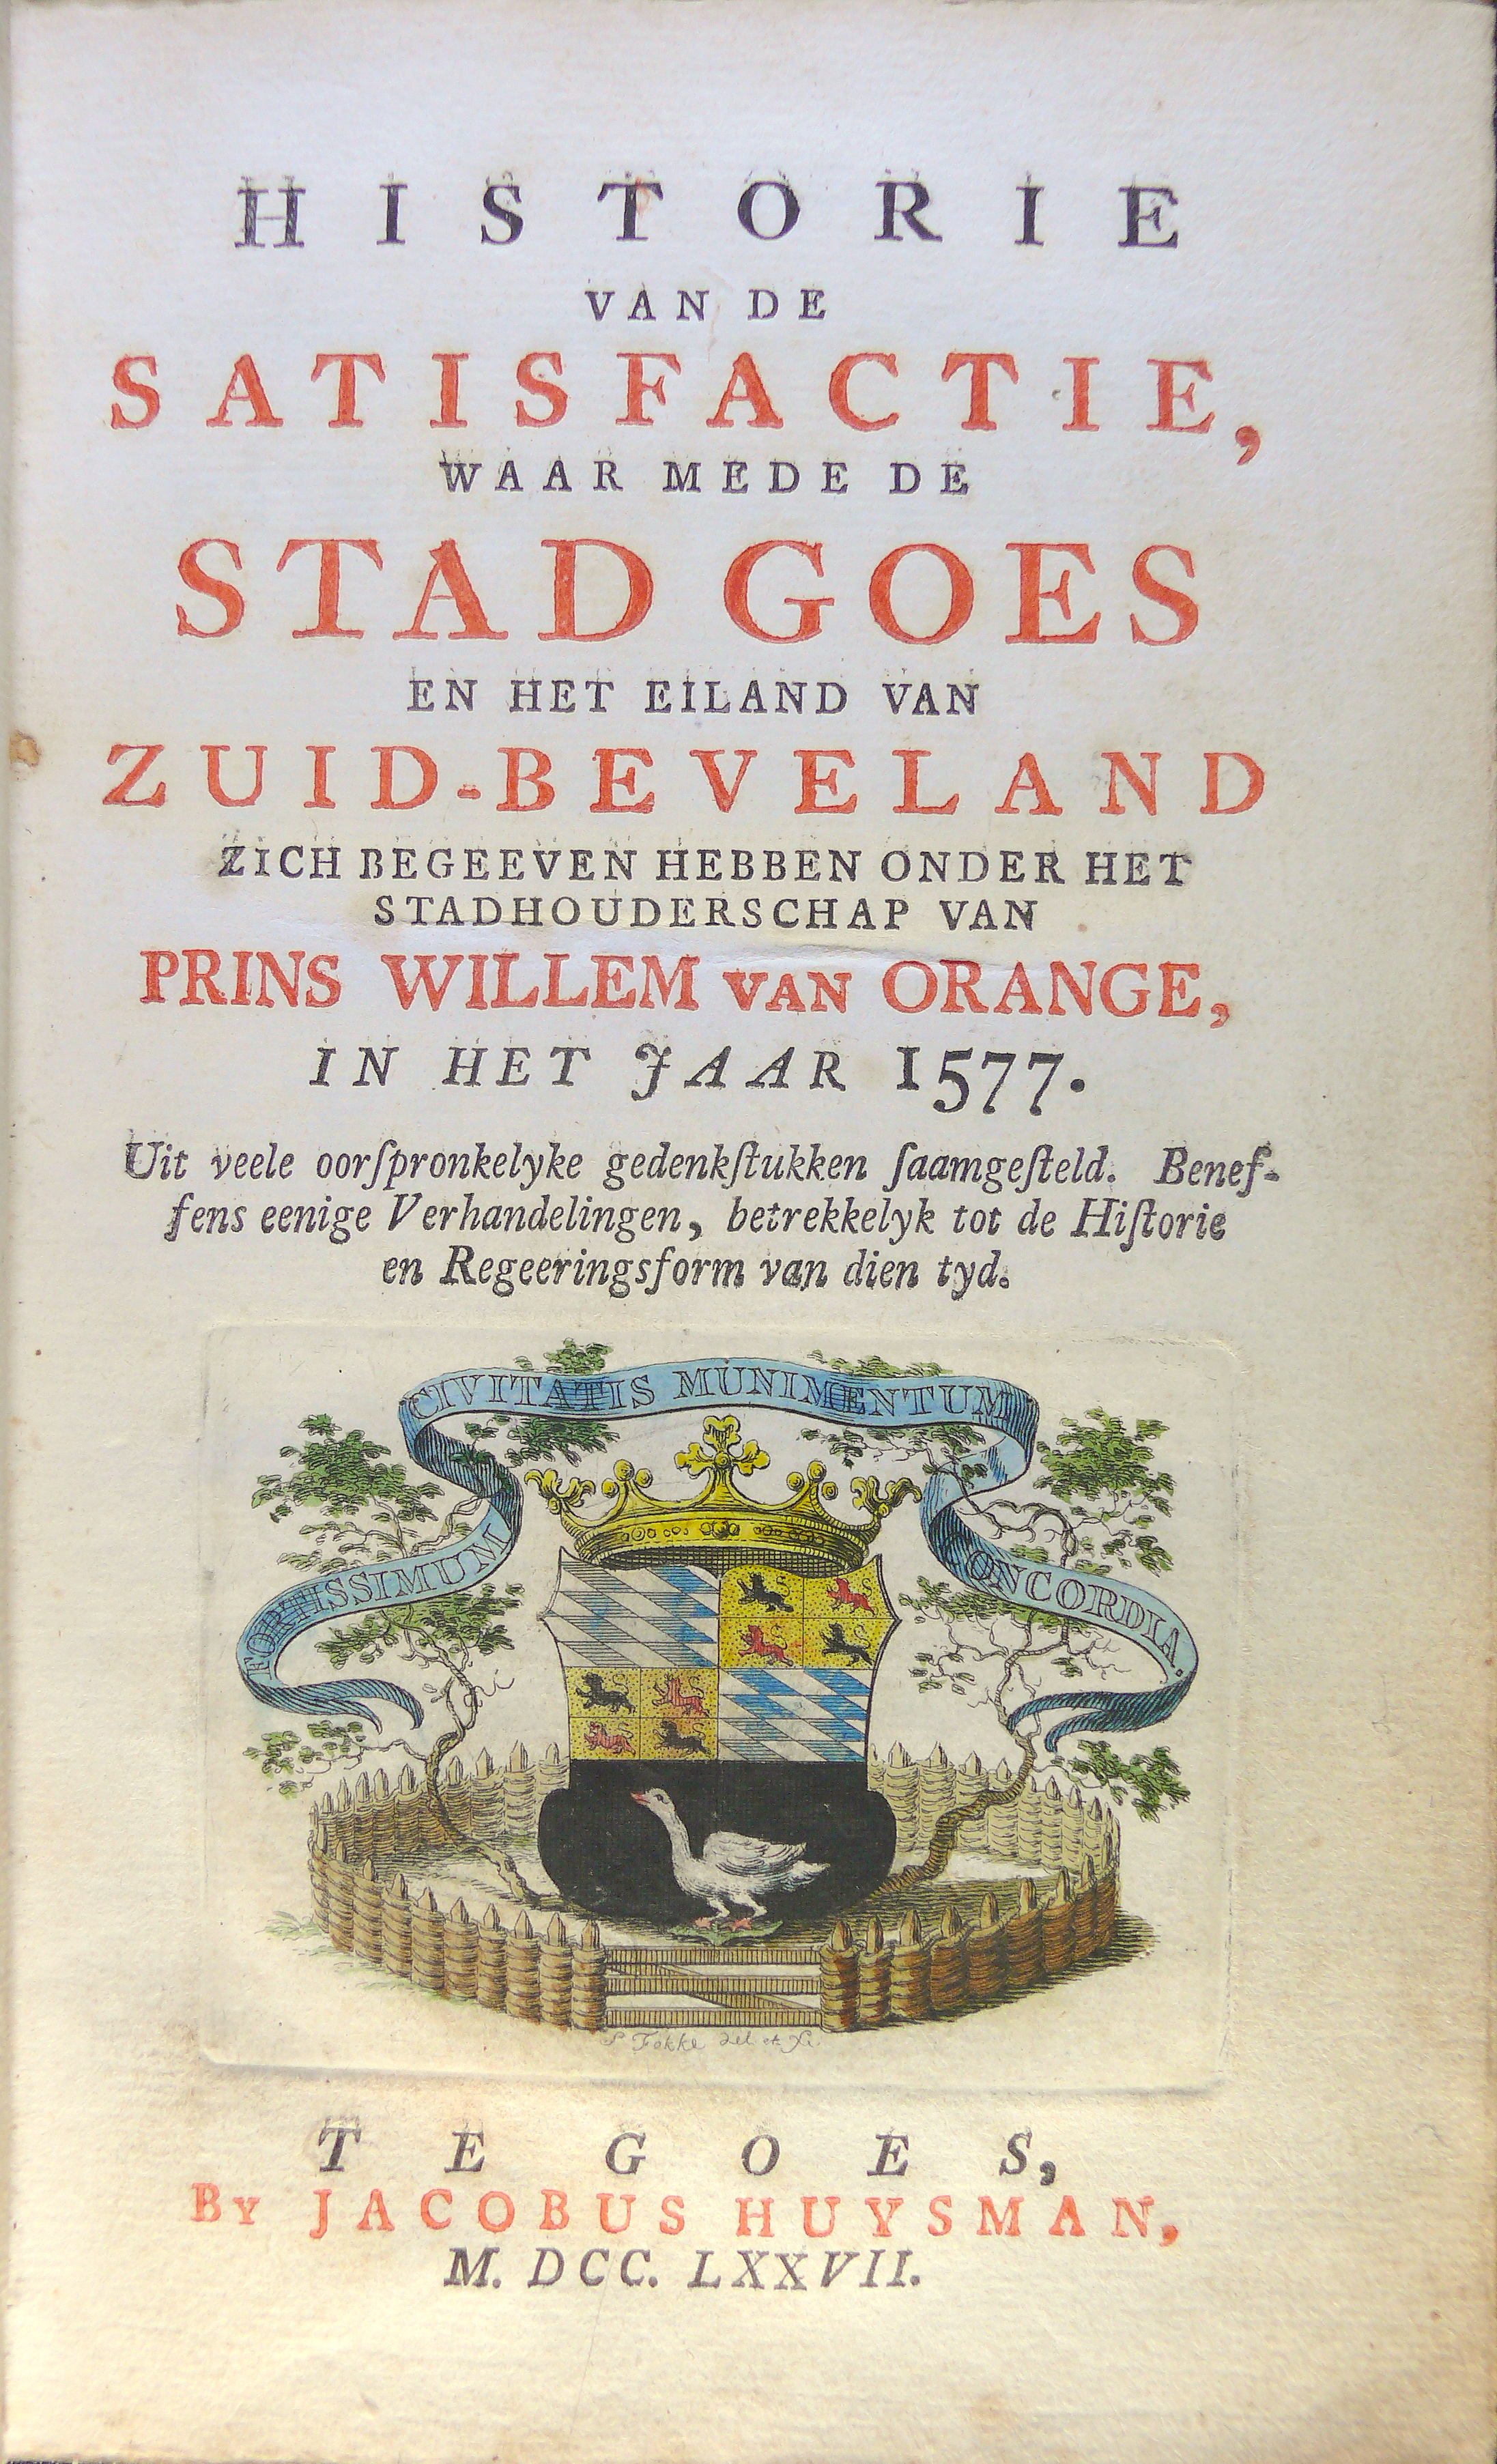 Titelblad Satisfactie van Goes, ingekleurd stadswapen, 1777.